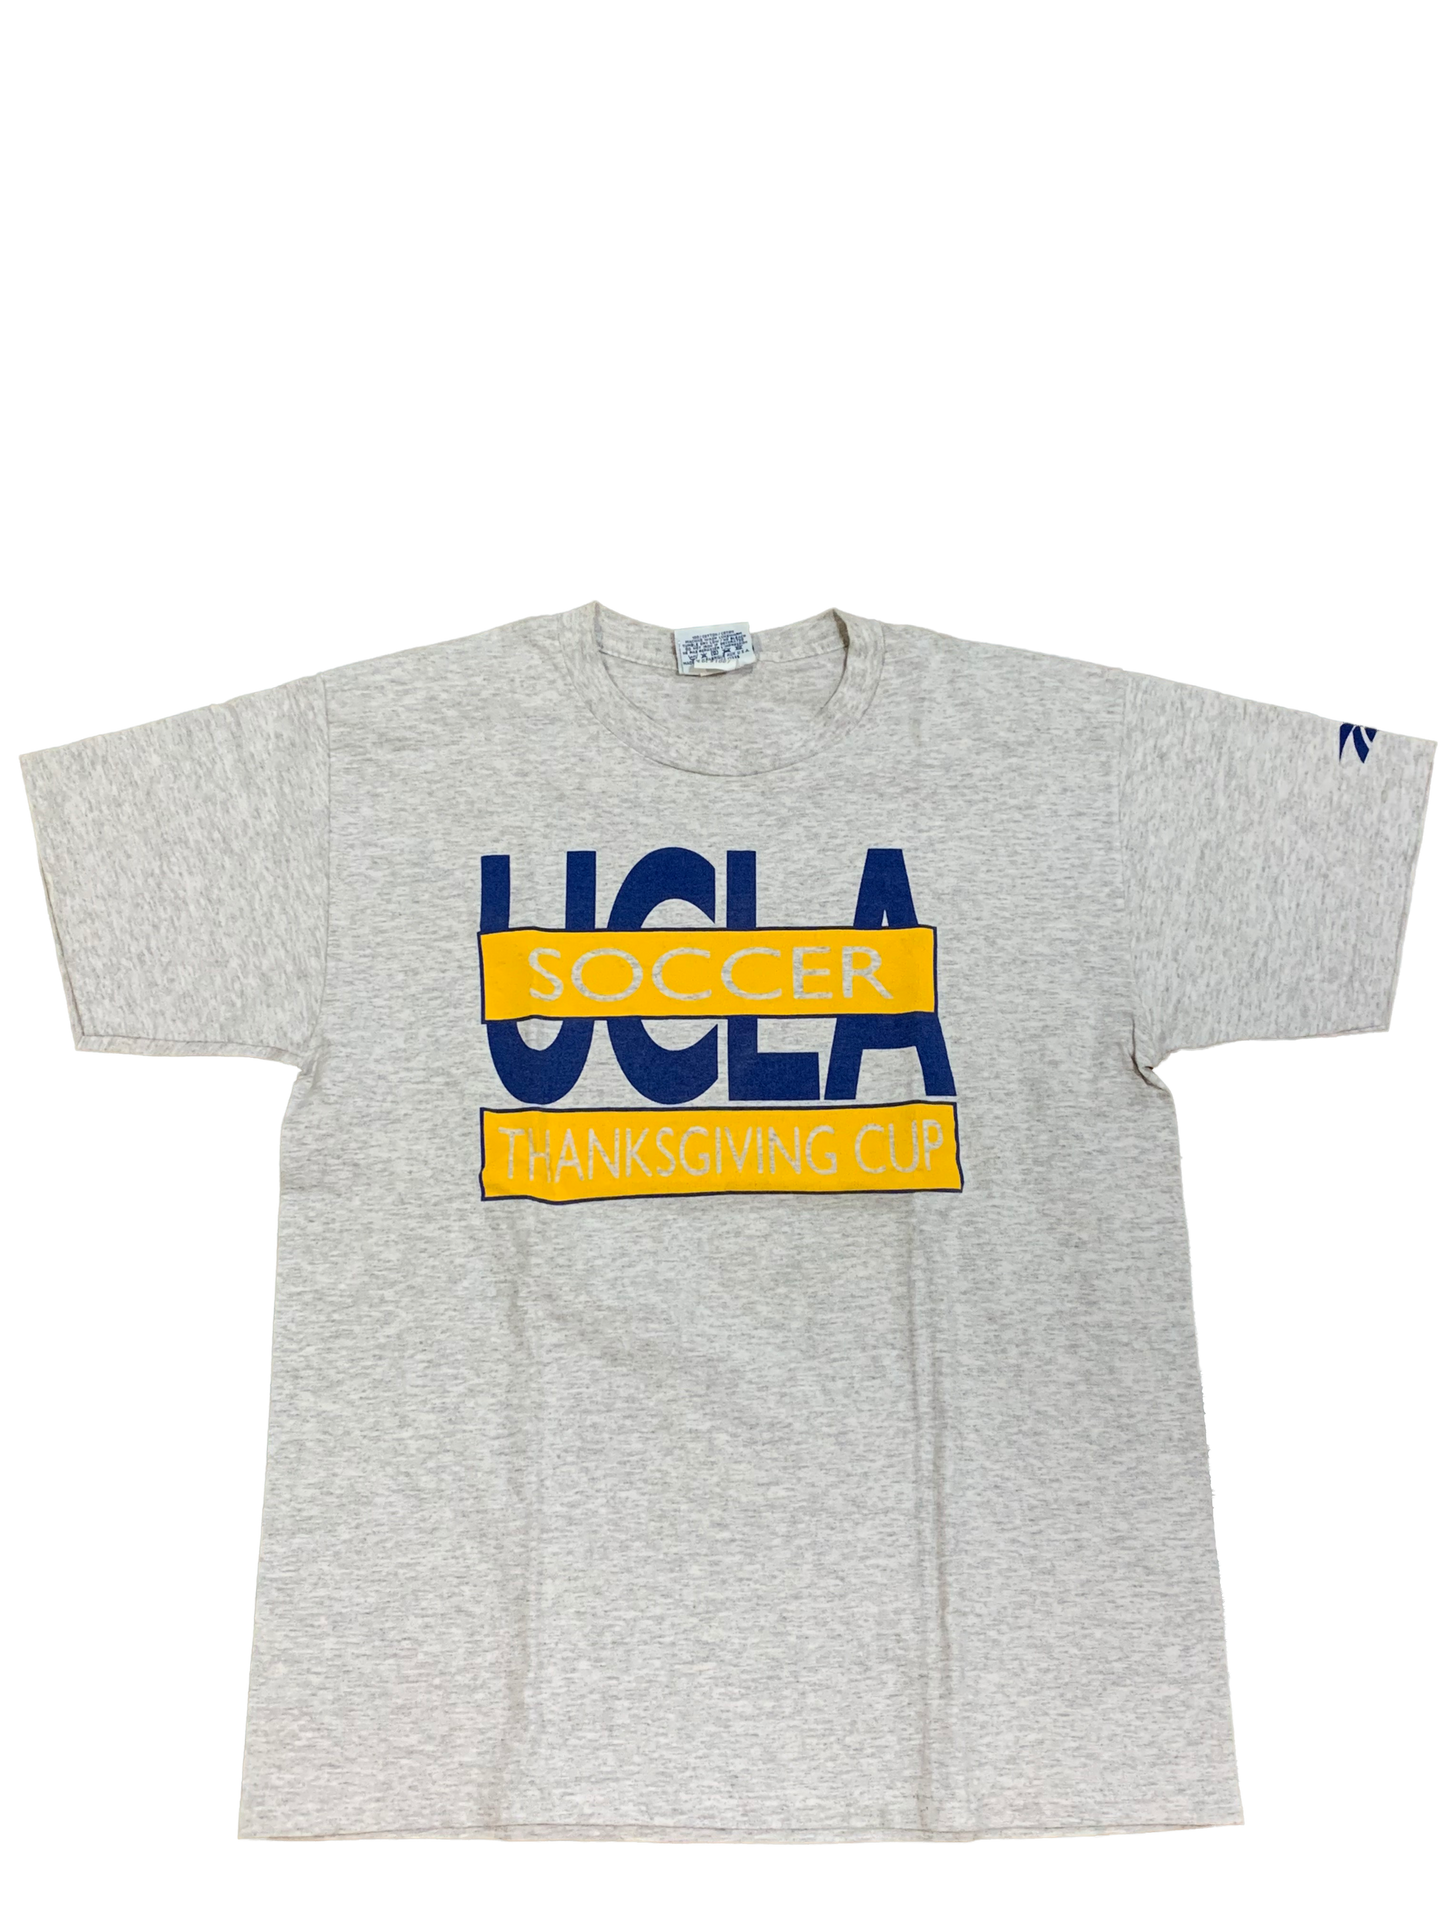 Vintage UCLA x Reebok Soccer Tee - Large